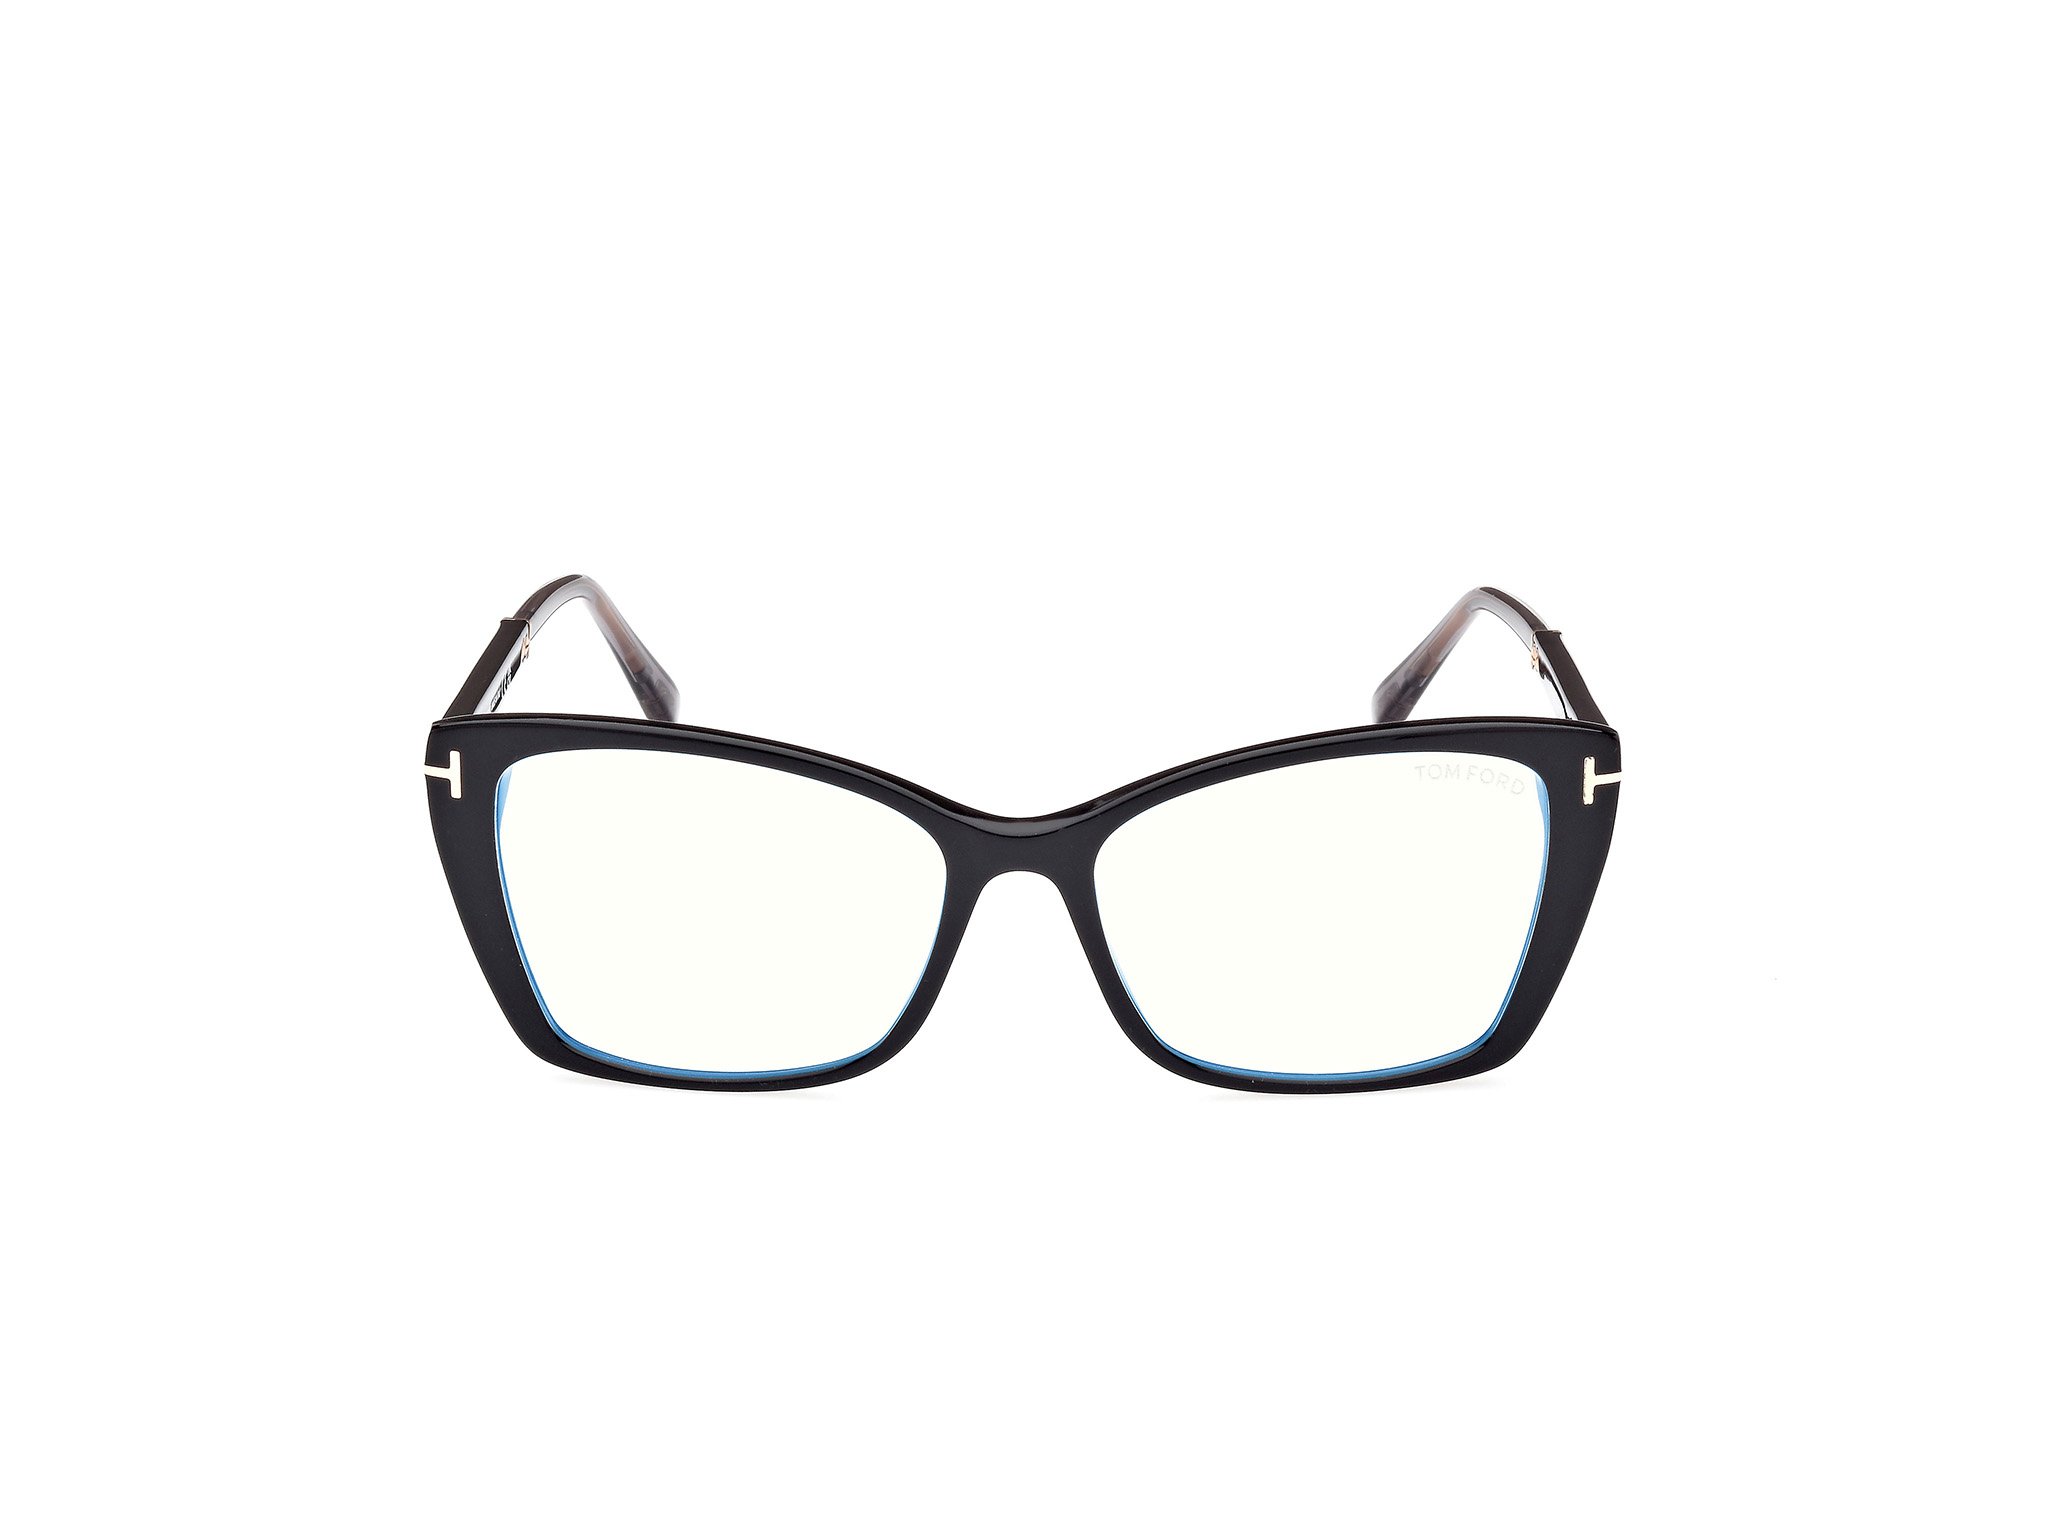 Das Bild zeigt die Korrektionsbrille FT5893-B 001 von der Marke Tom Ford in schwarz.